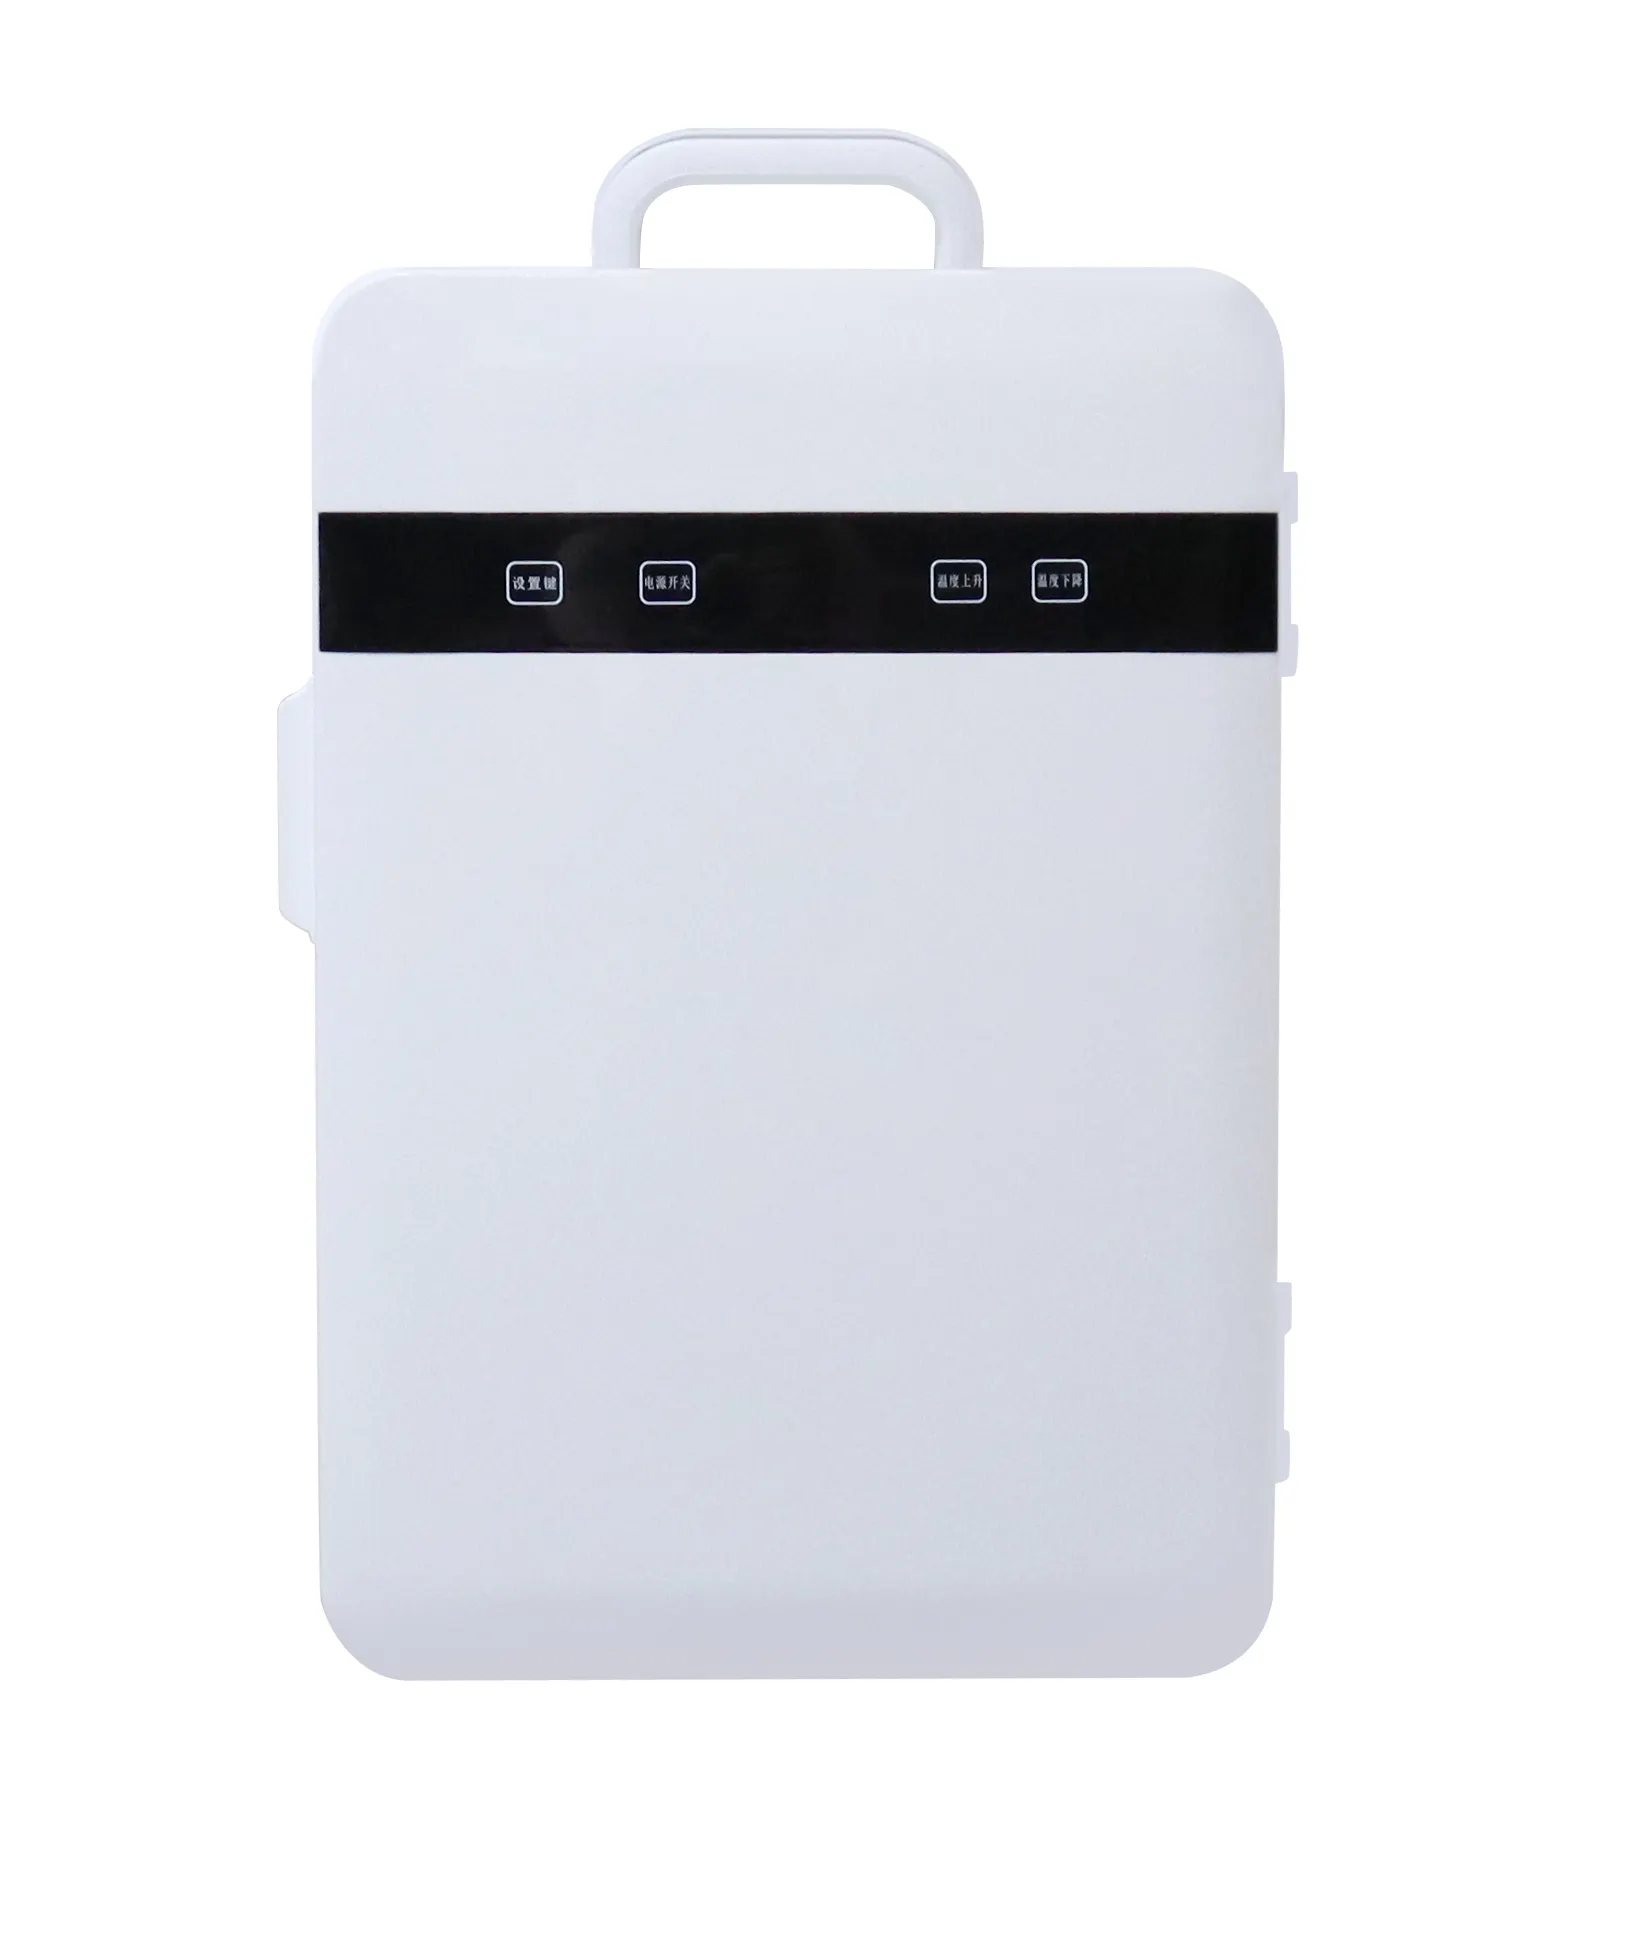 Best-seller in tutto il mondo 12v portatile Mini frigo 12v/24v compressore refrigeratore a Gas campeggio Freezer piccoli prezzi frigo